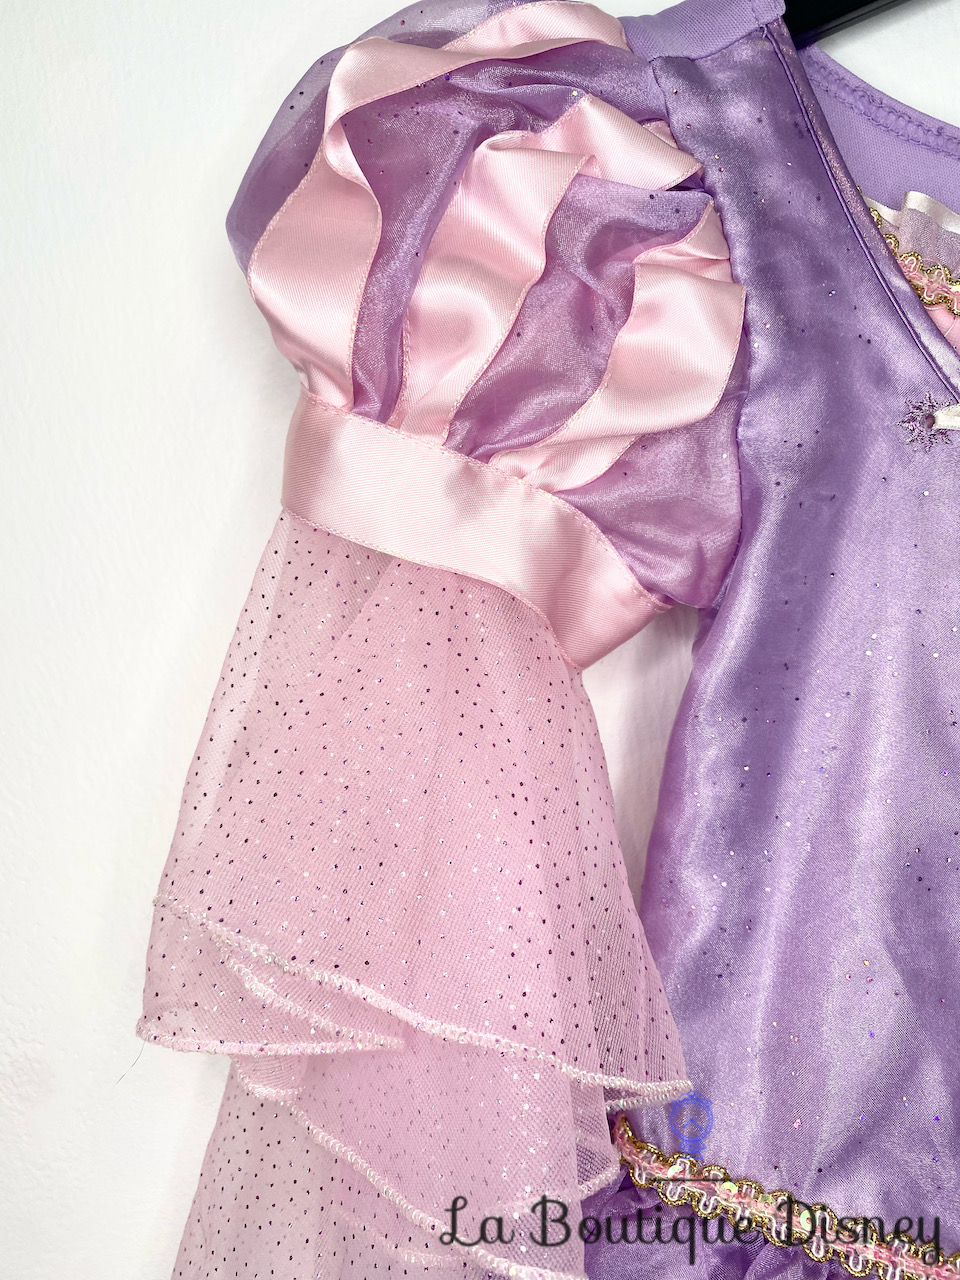 déguisement-raiponce-disney-store-taille-5-6-ans-robe-princesse-violet-paillettes-voile-rose-6